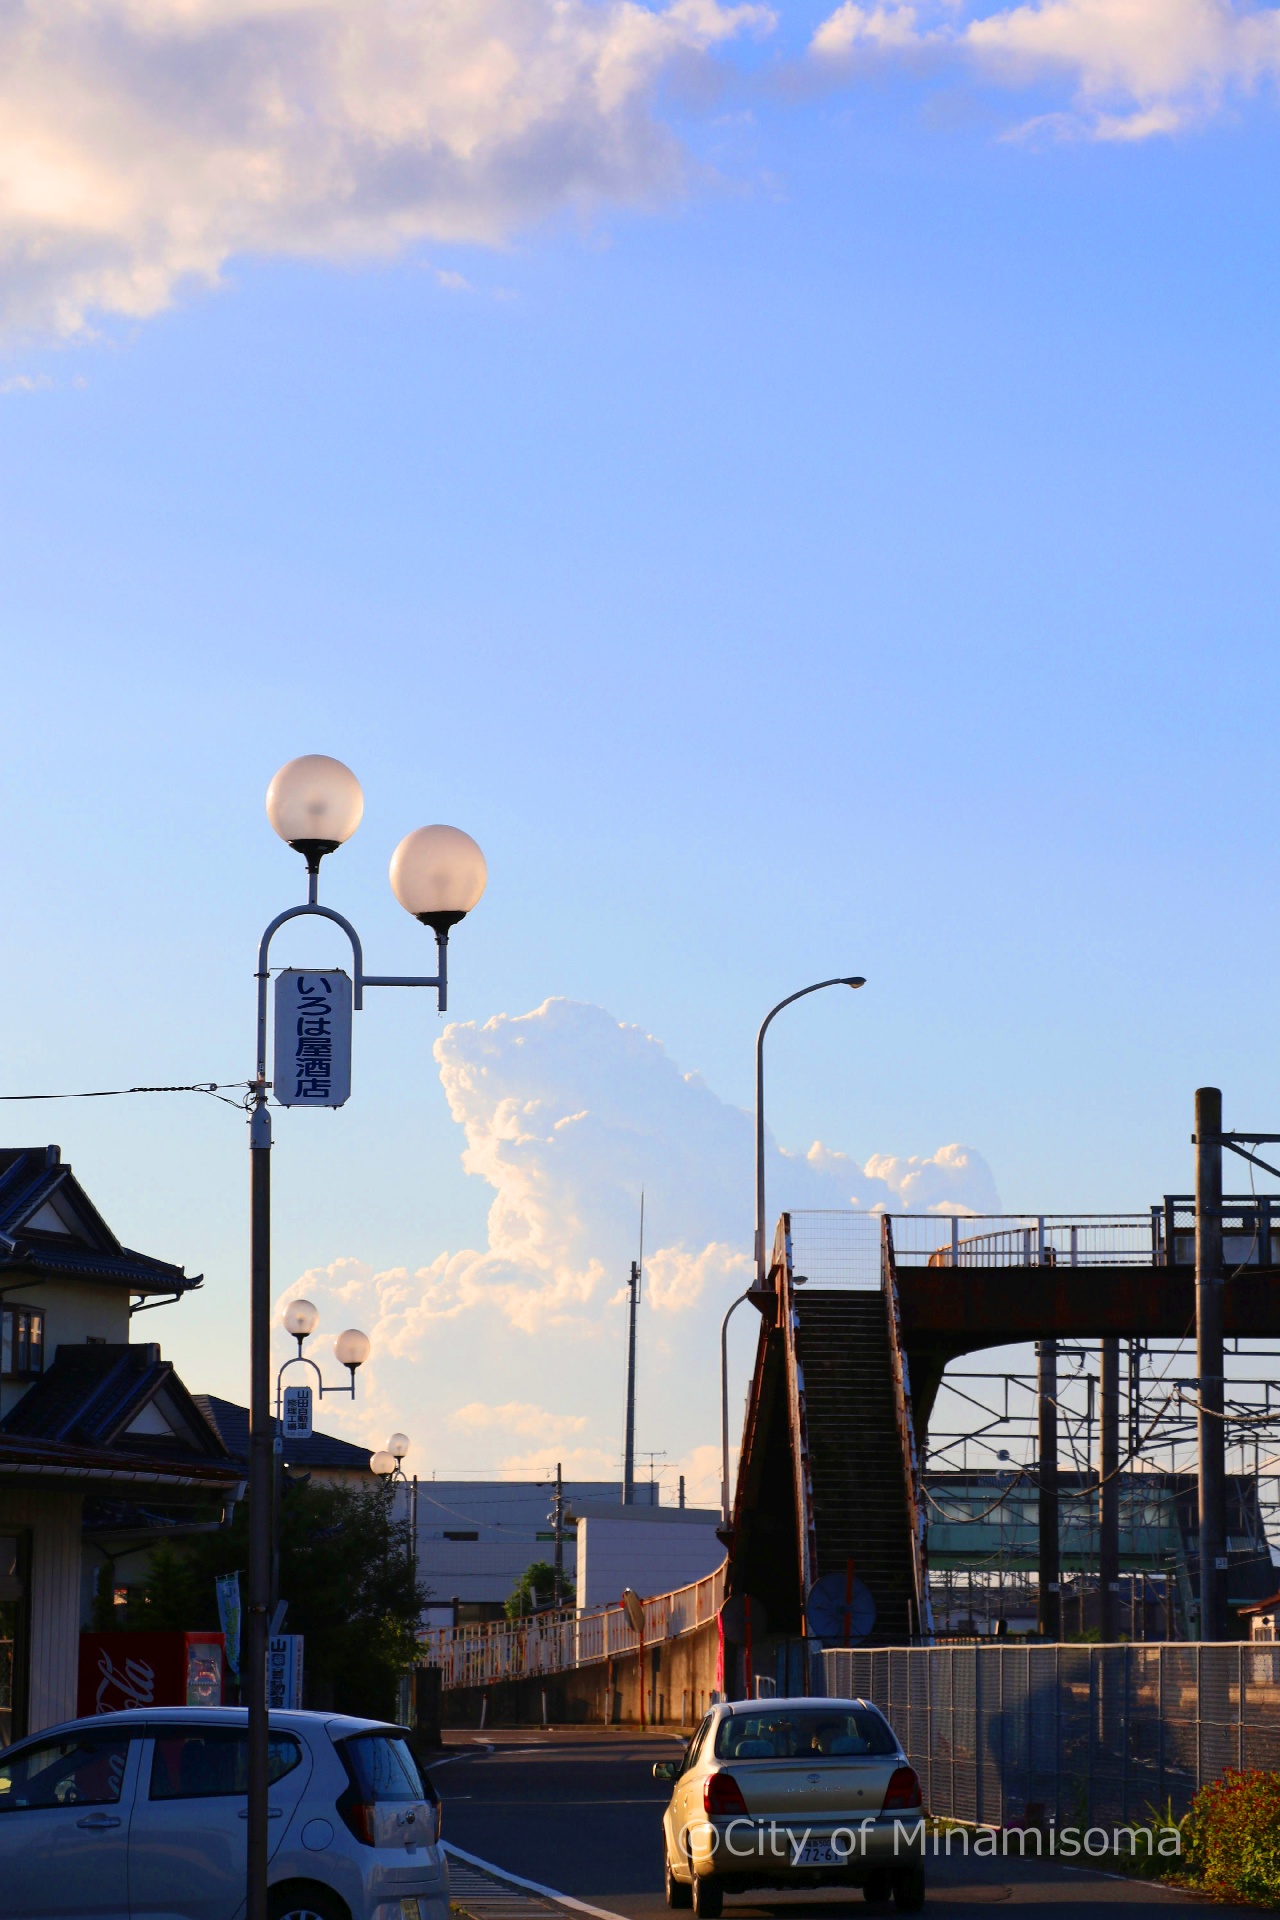 晴れた空には入道雲が湧き起こっている。午後の日差しに照らされた鹿島区の陸橋の様子。